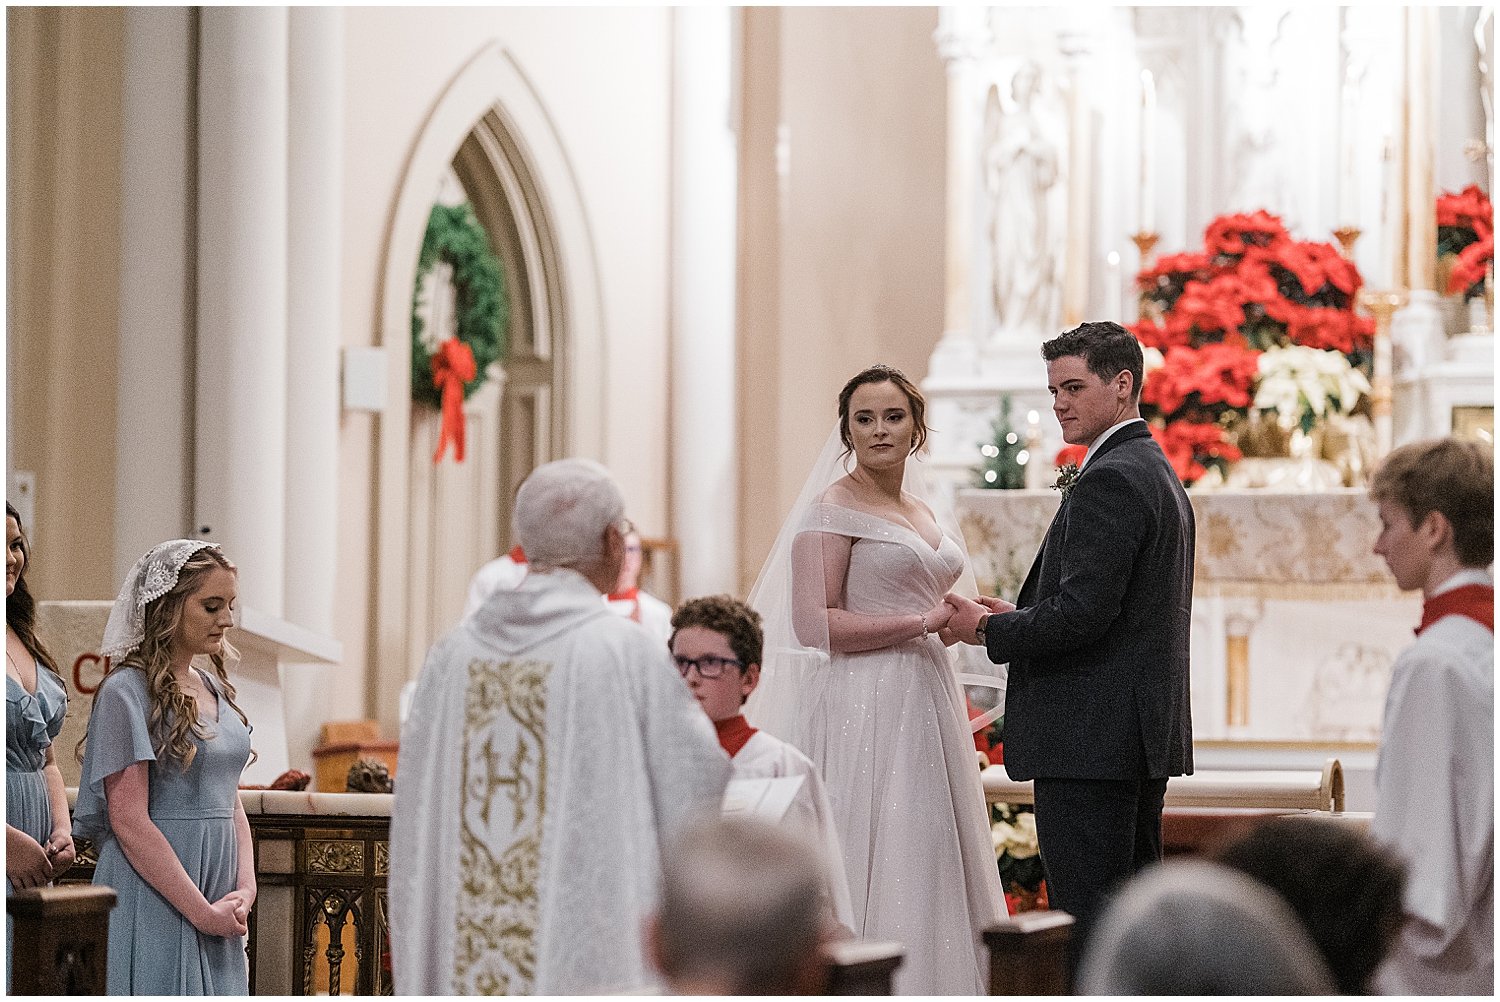 Emmanuel Catholic Church Wedding | Dayton, Ohio